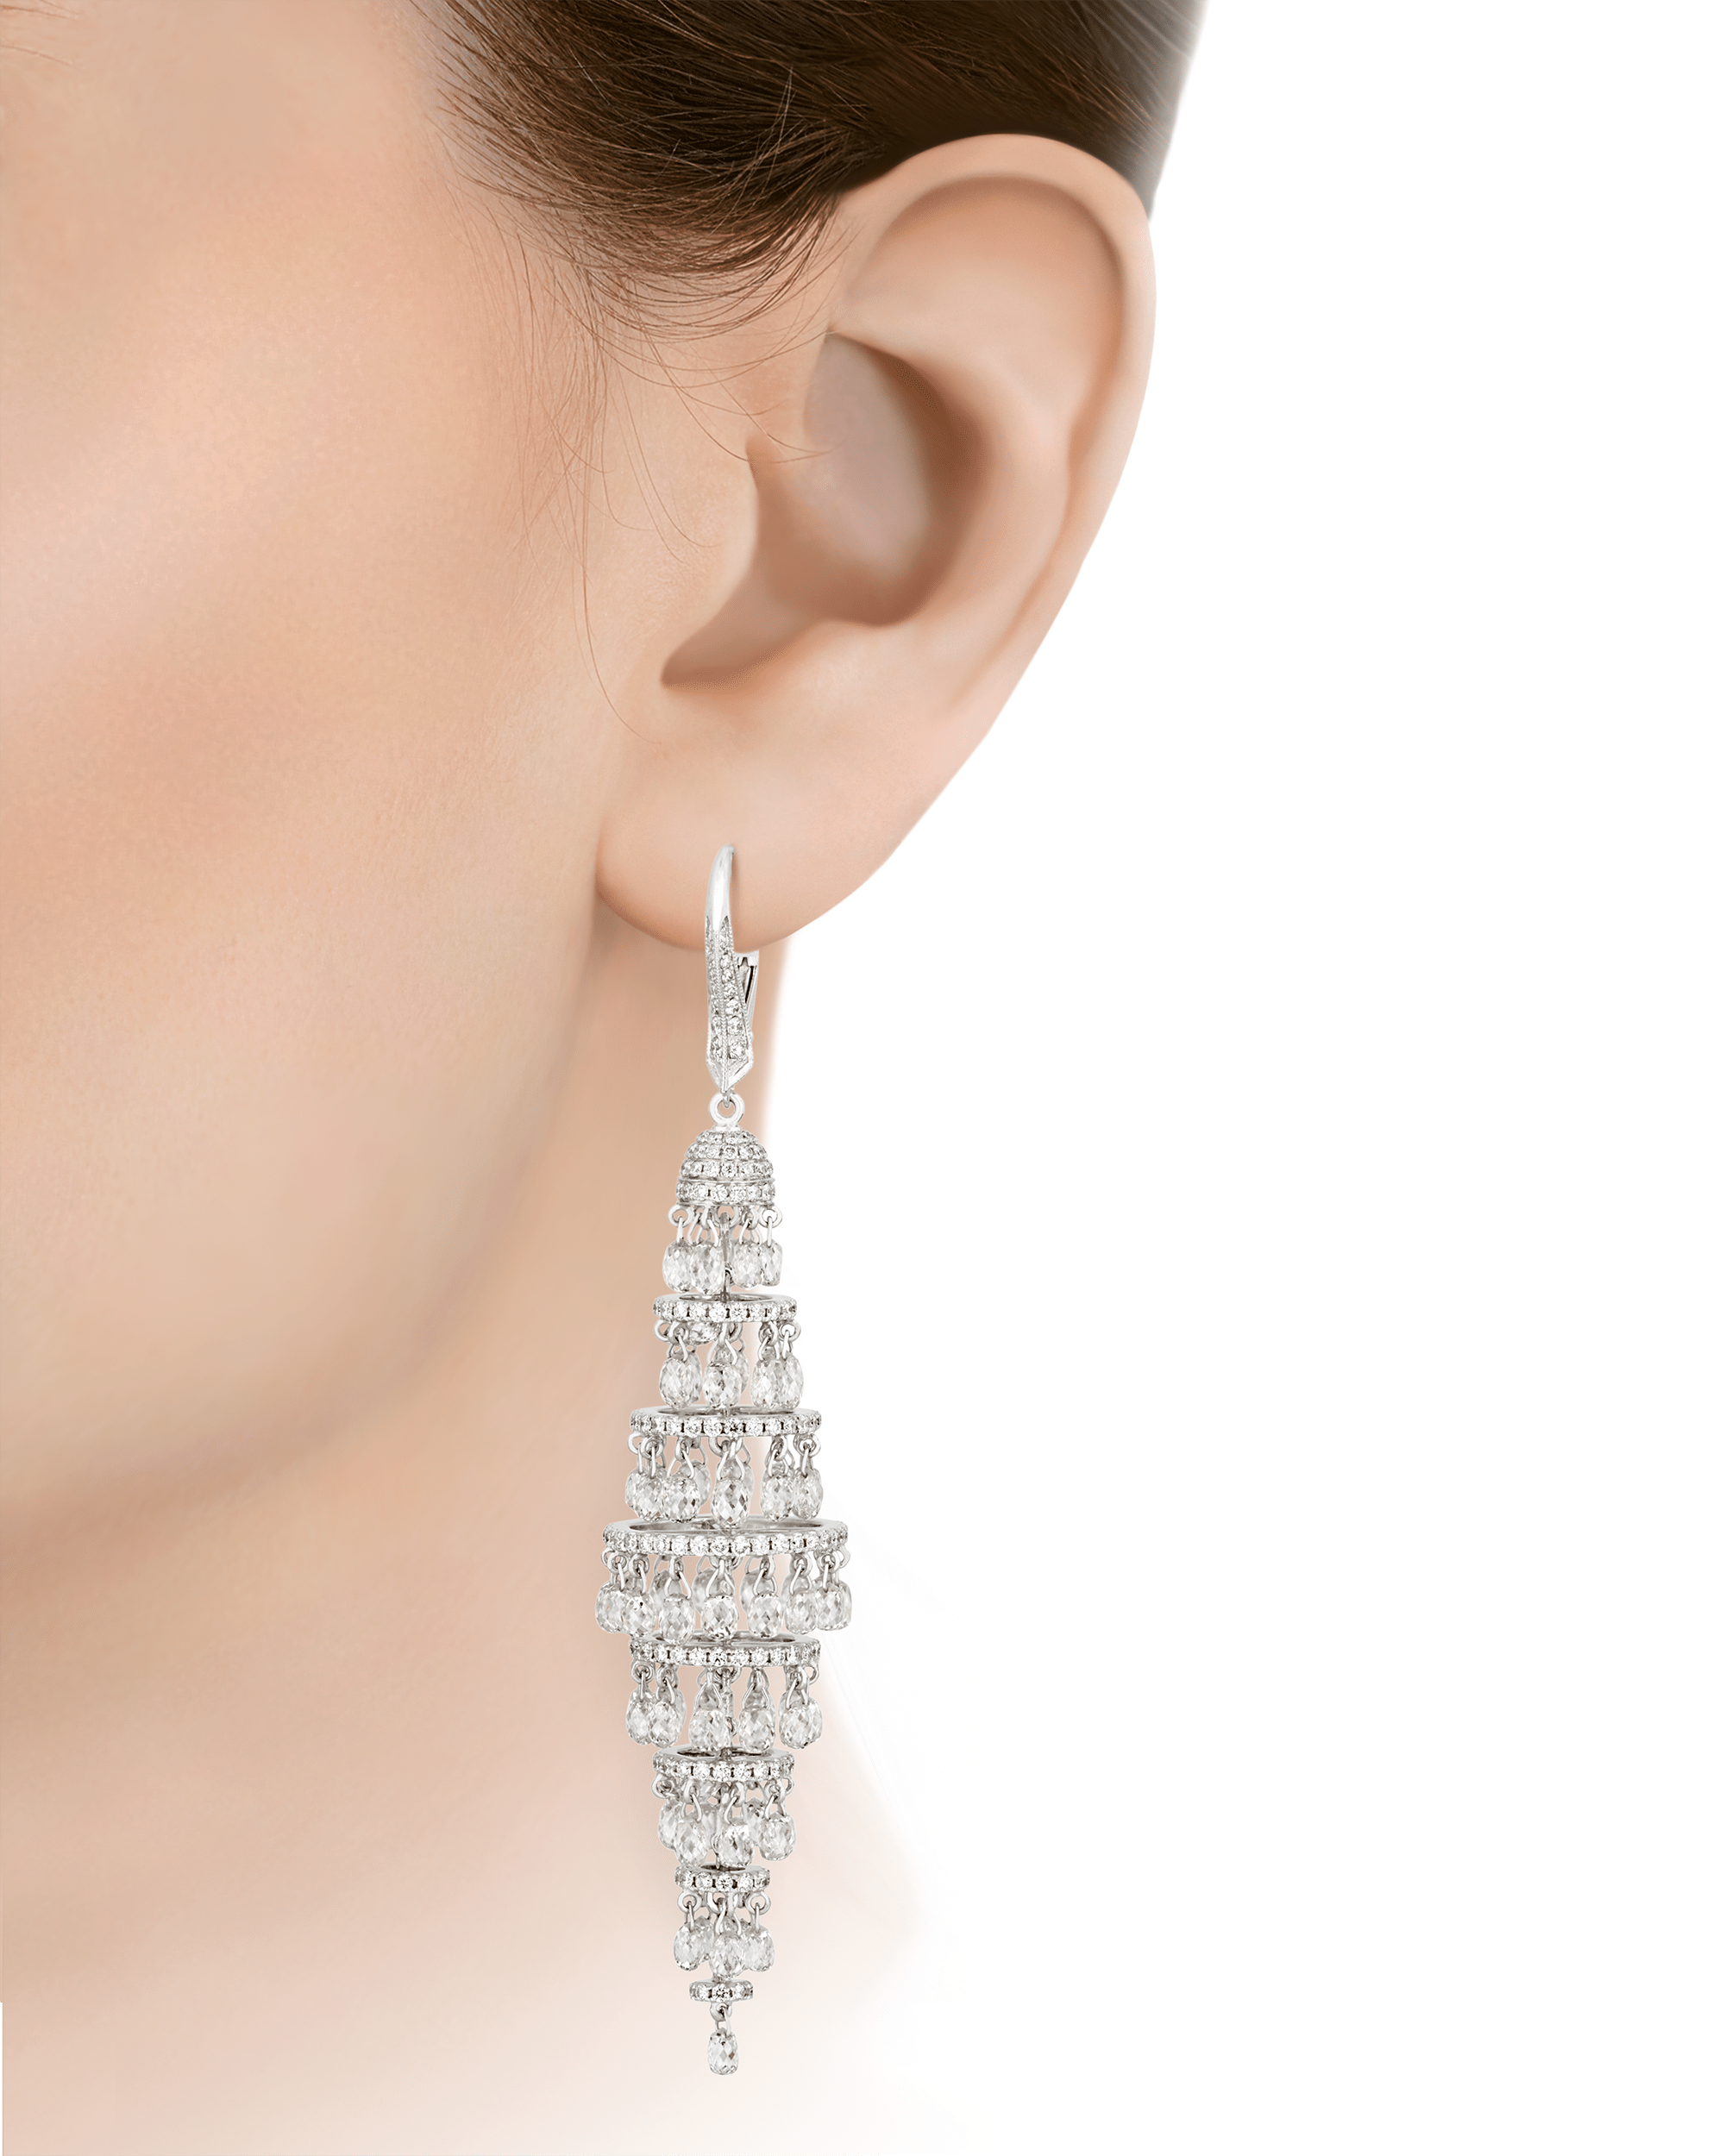 Briolette Diamond Chandelier Earrings, 19.07 Carats